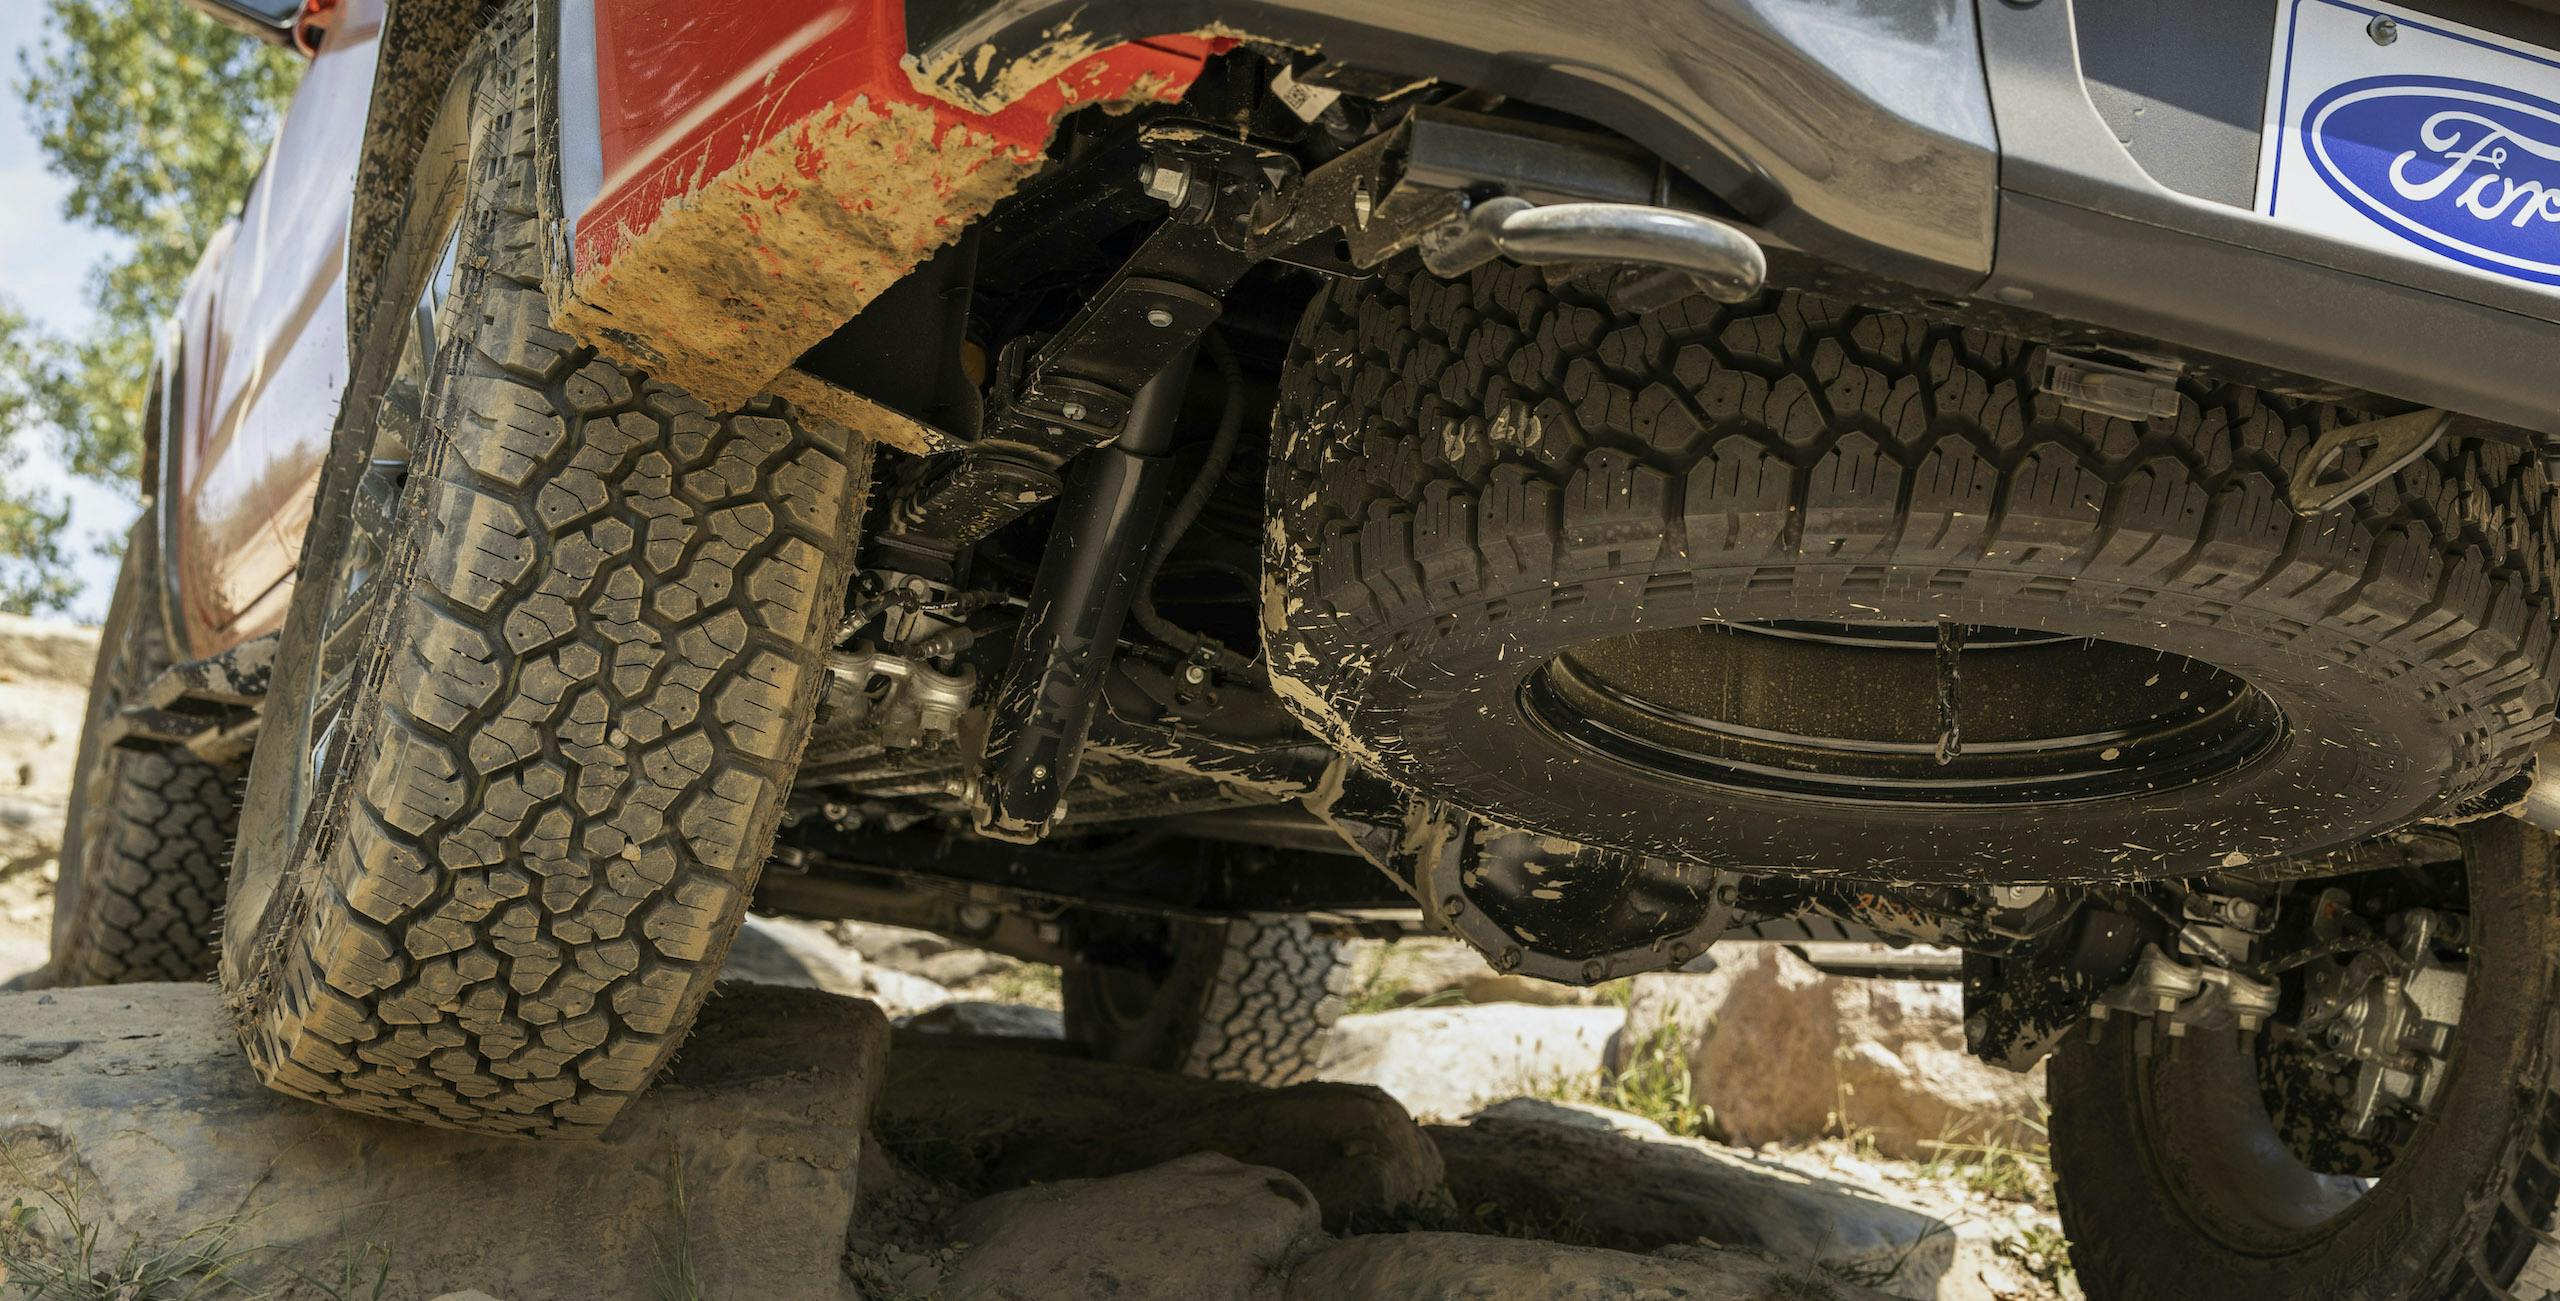 Ranger Tremor Lariat underside rear spare tire suspension